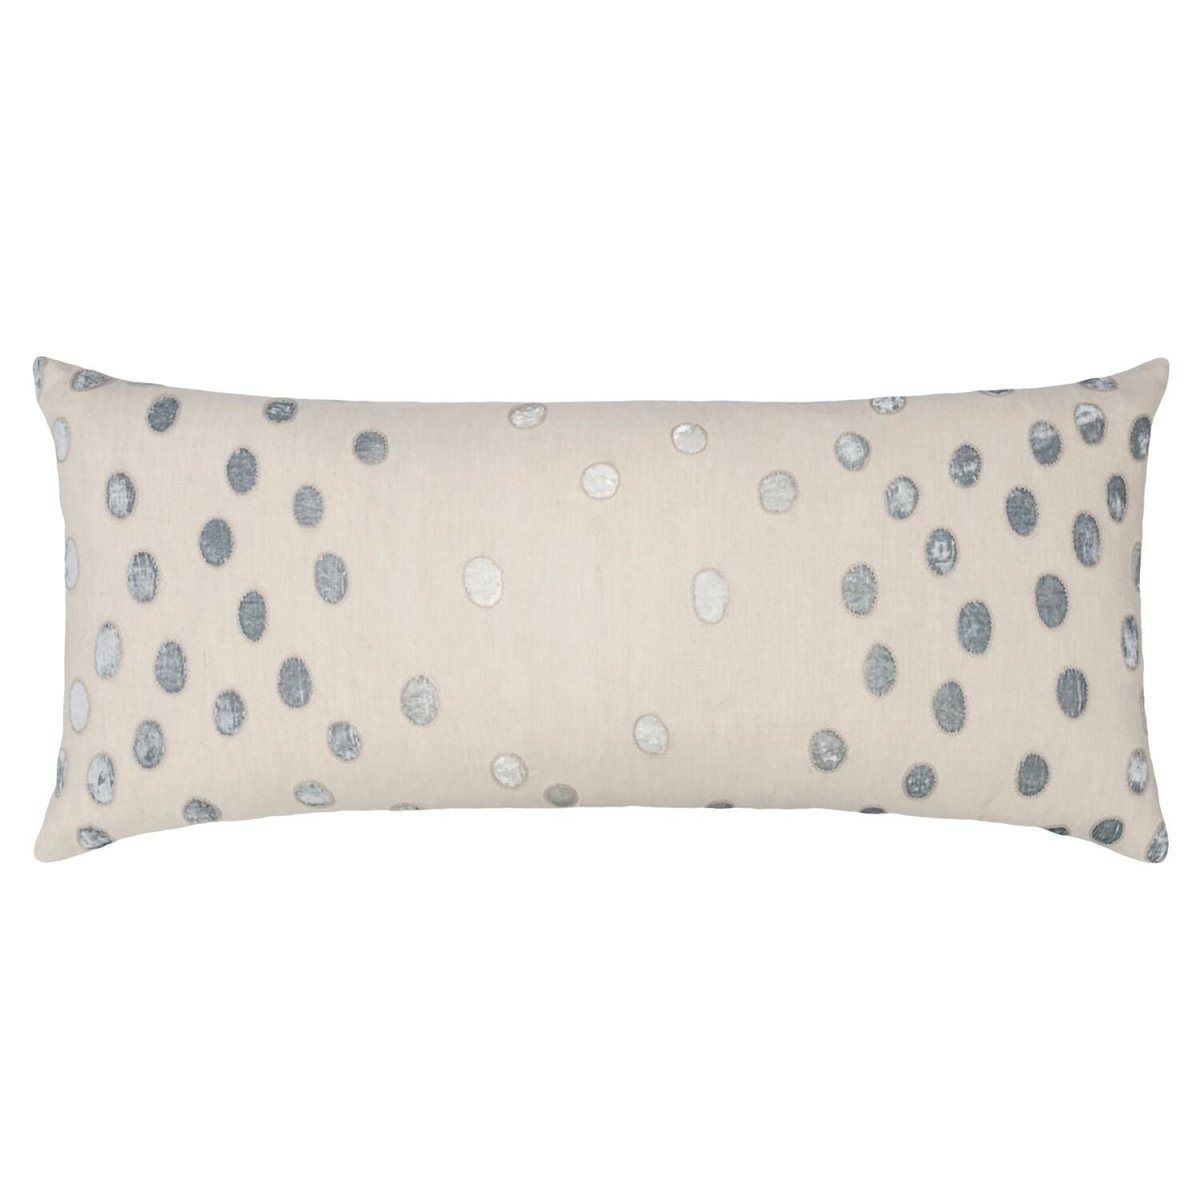 Fig Linens - Seaglass Ovals Velvet Appliqué Large Boudoir Pillows by Kevin O'Brien Studio